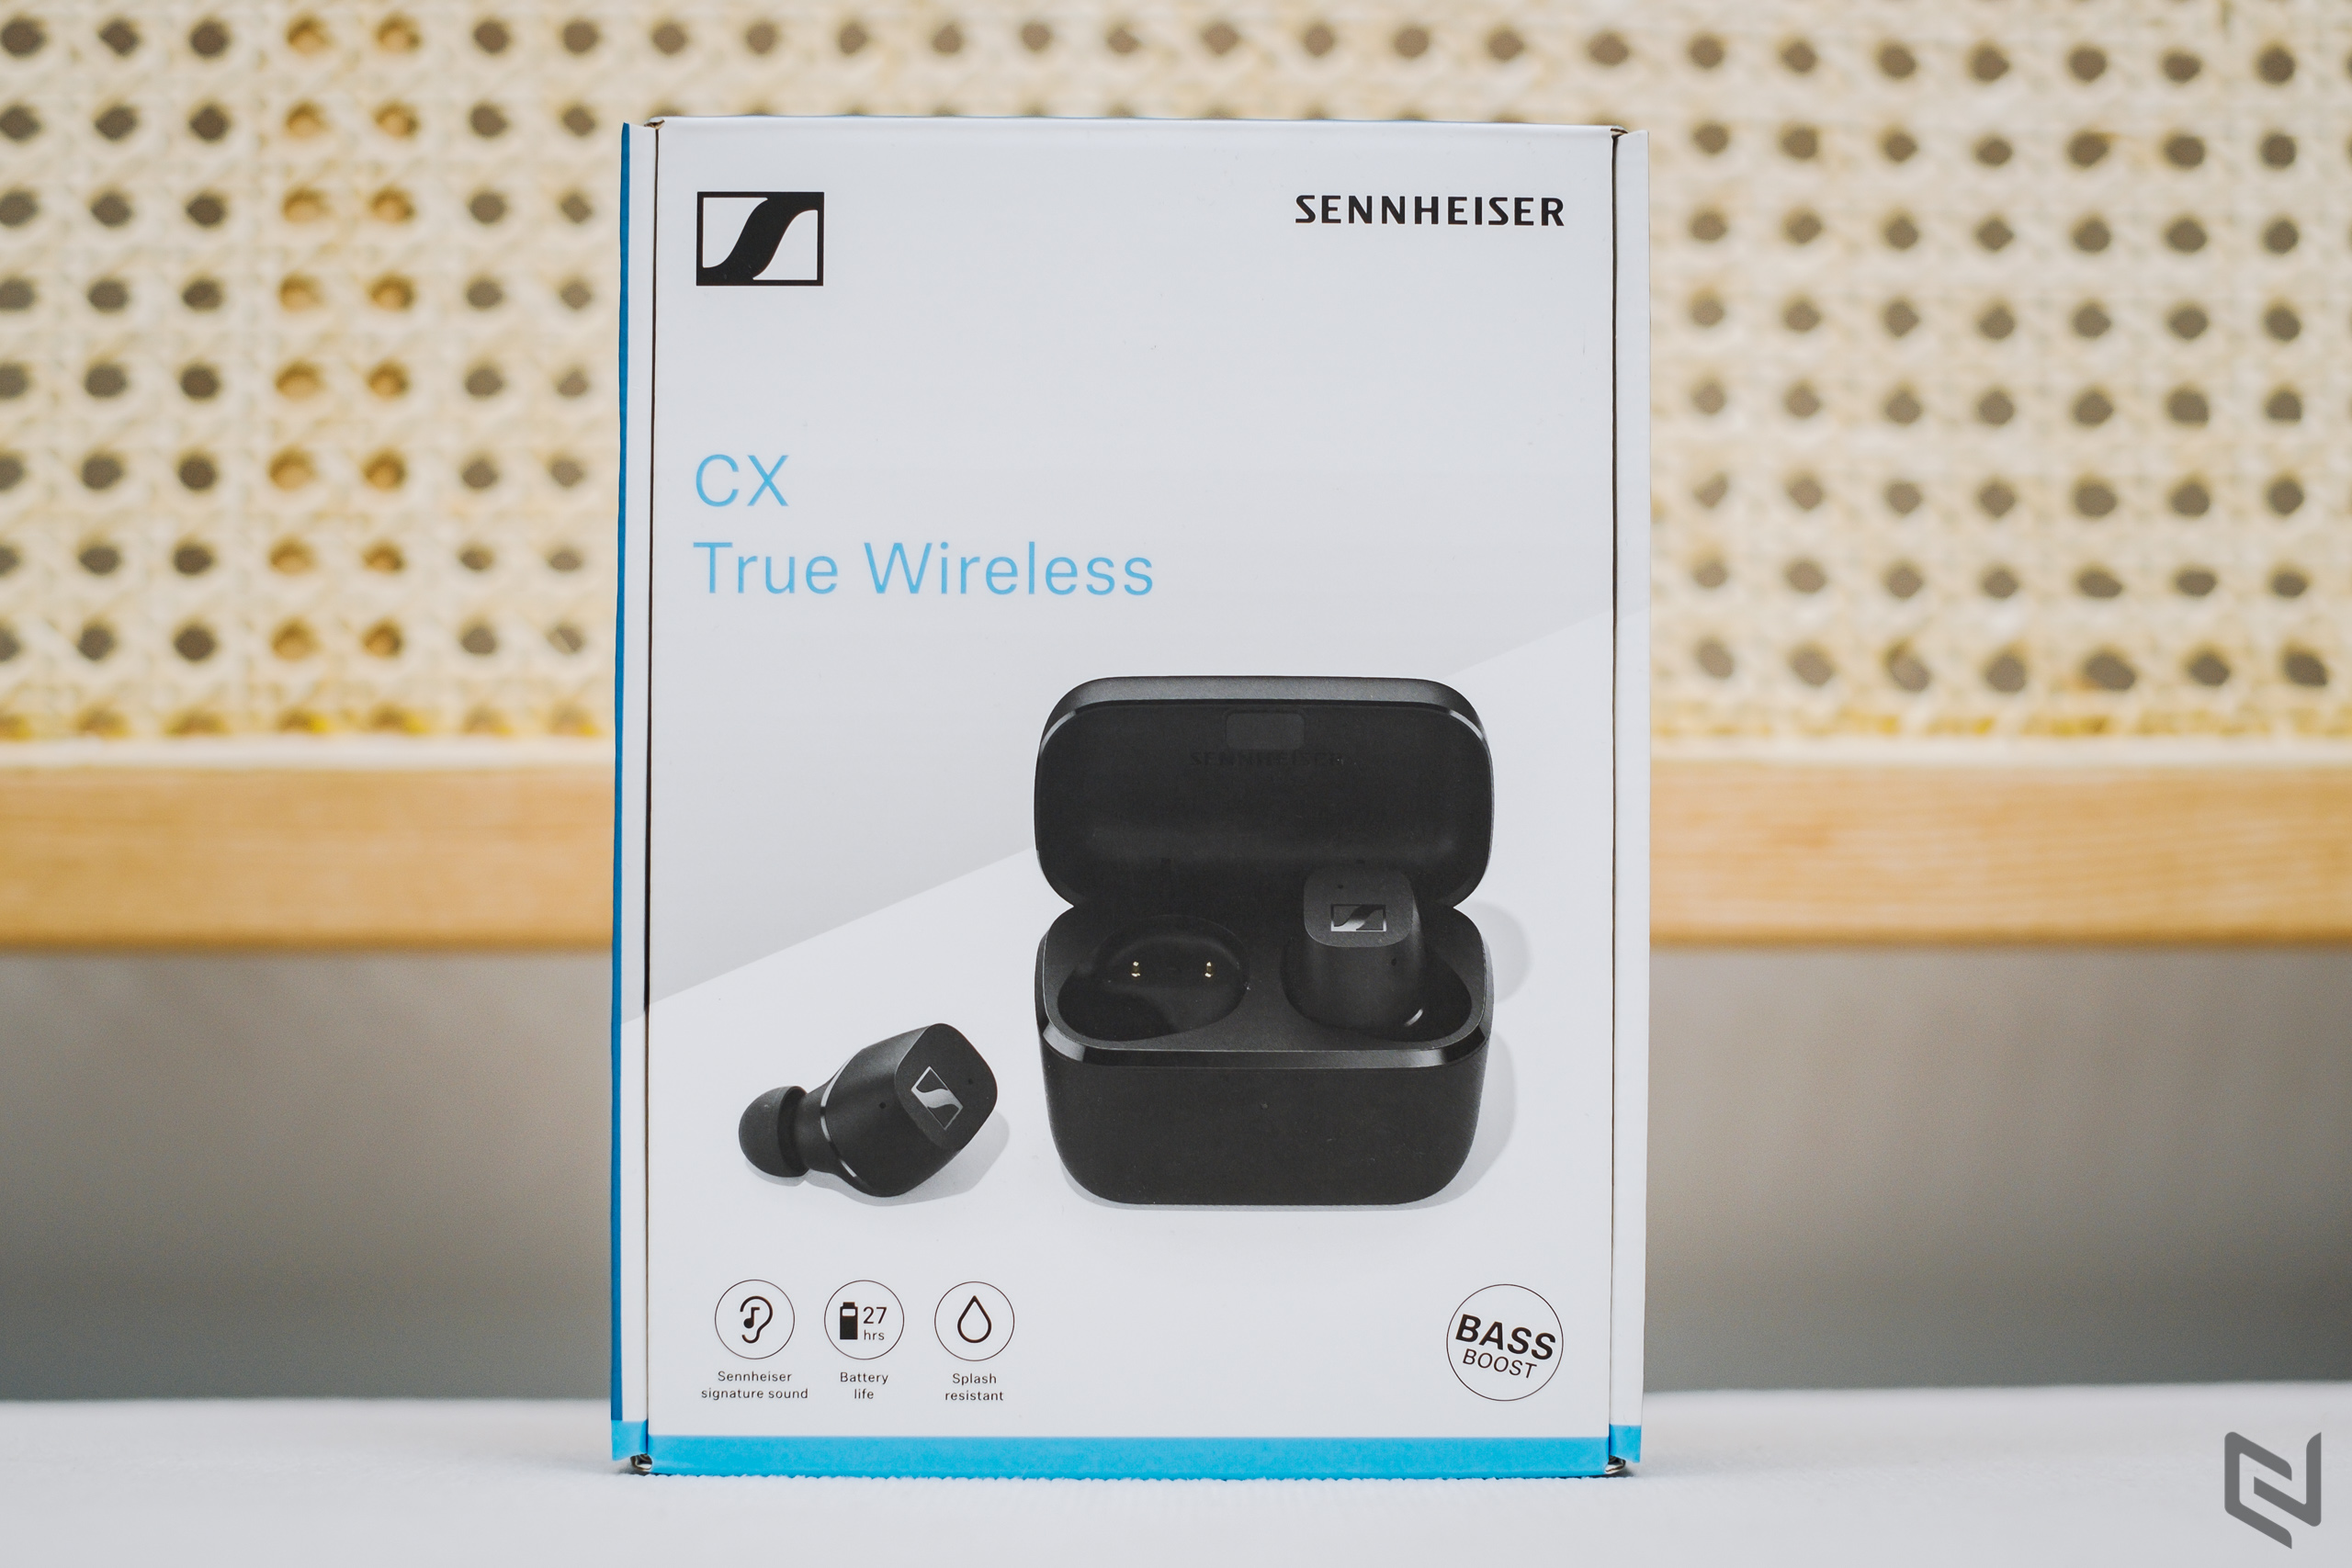 Mở hộp và đánh giá nhanh Sennheiser CX True Wireless: Chất âm dẫn đầu phân khúc